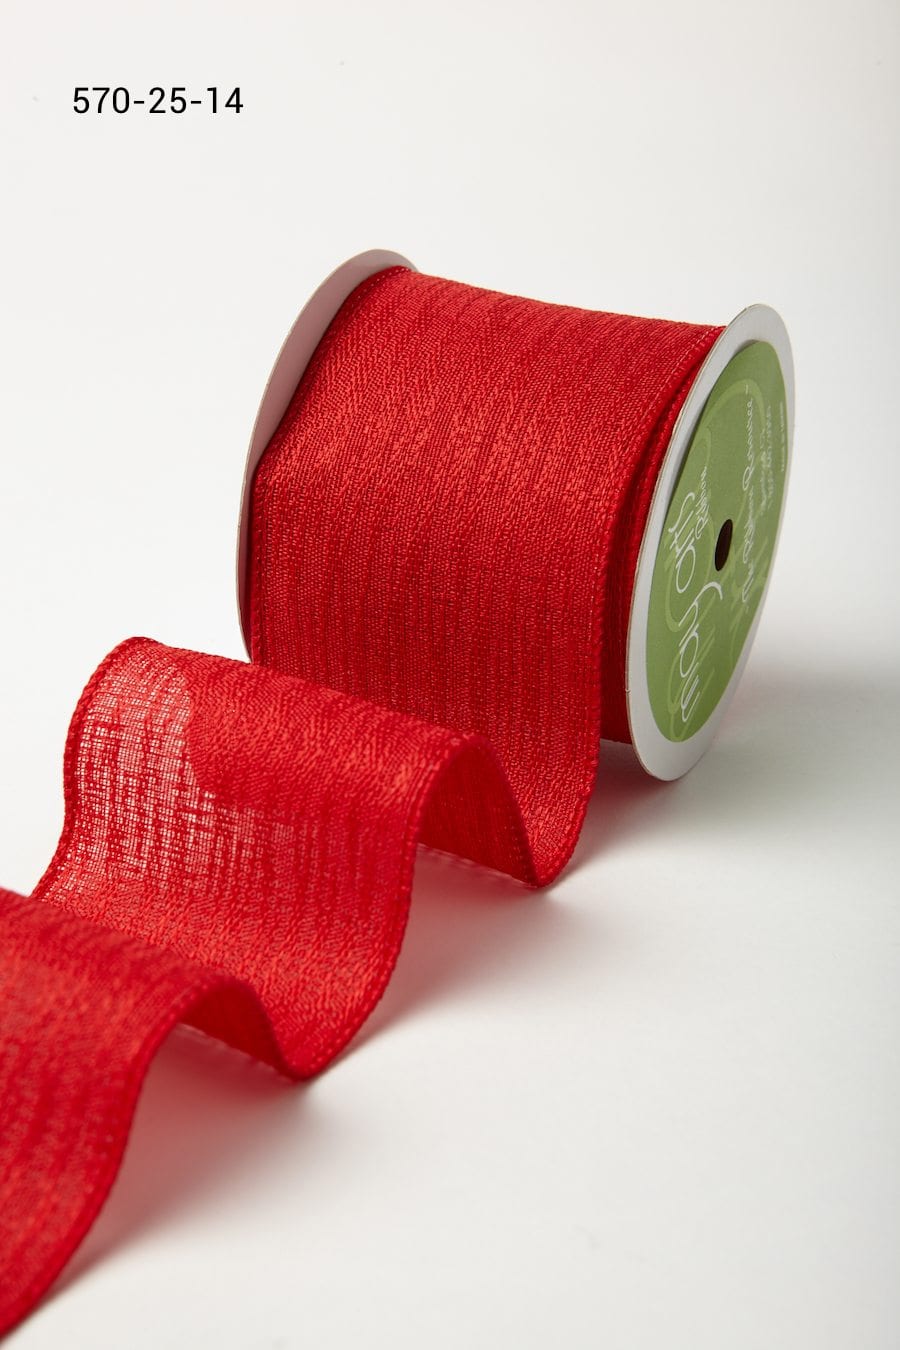 Discount Ribbons - Decorative Ribbon Sale - May Arts Ribbon